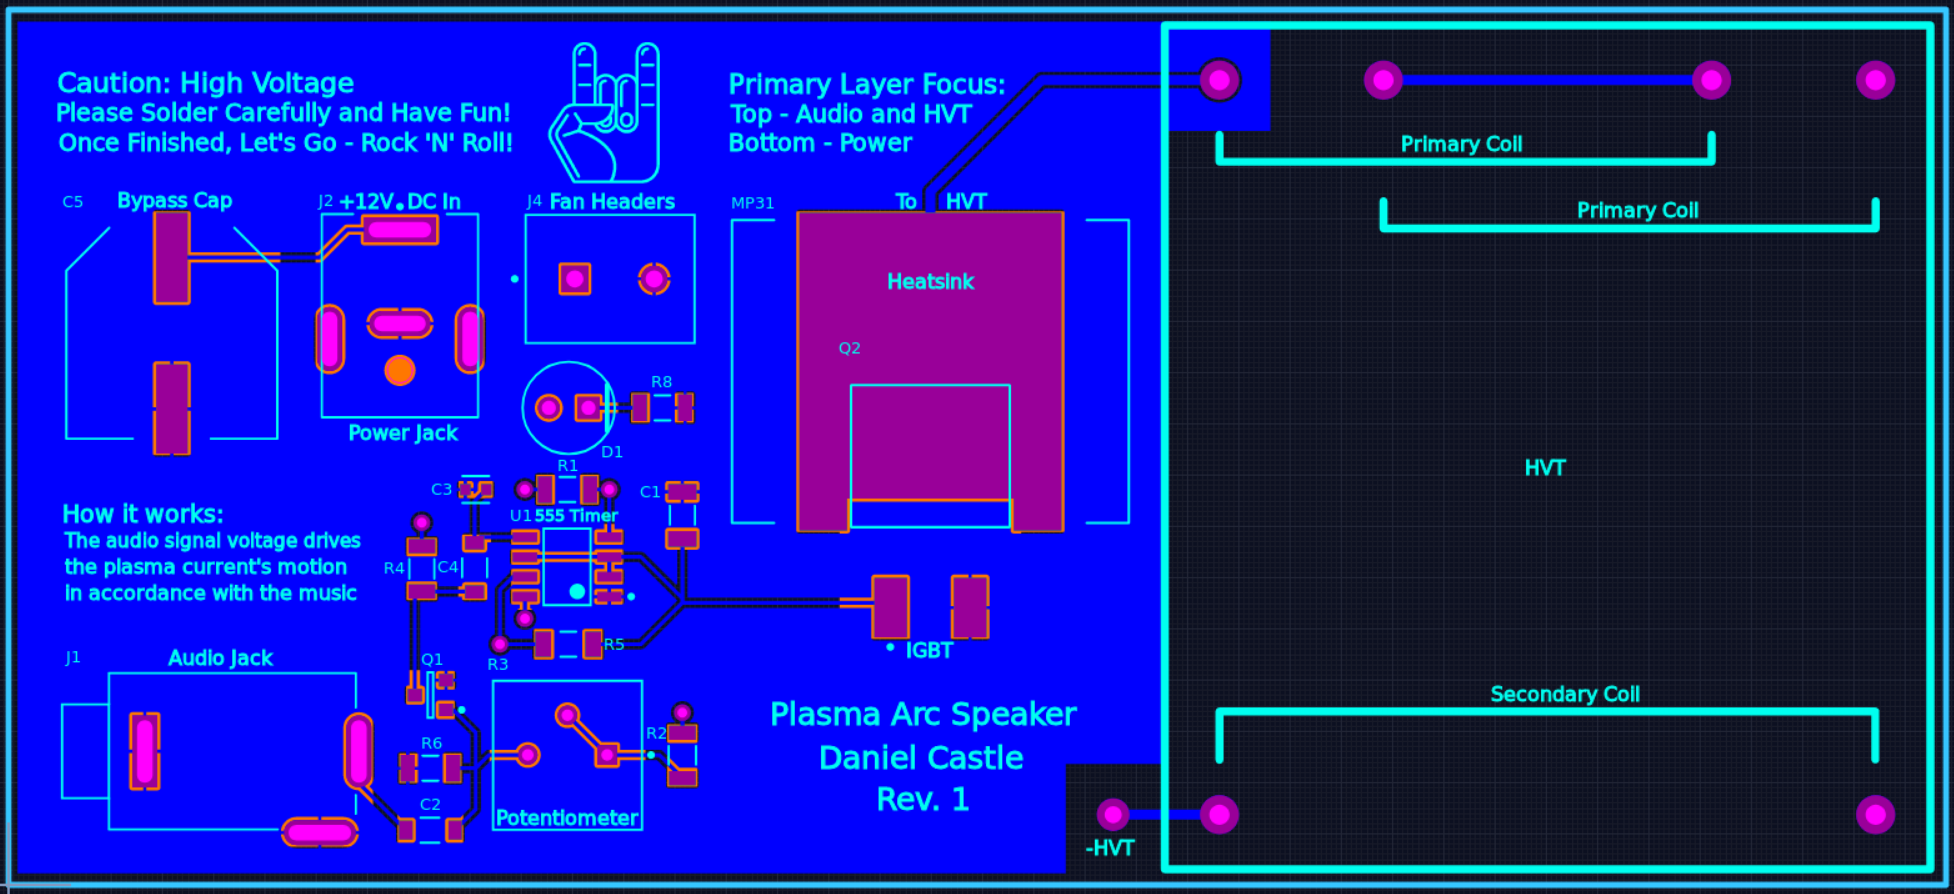 Plasma Arc Speaker Top Layer